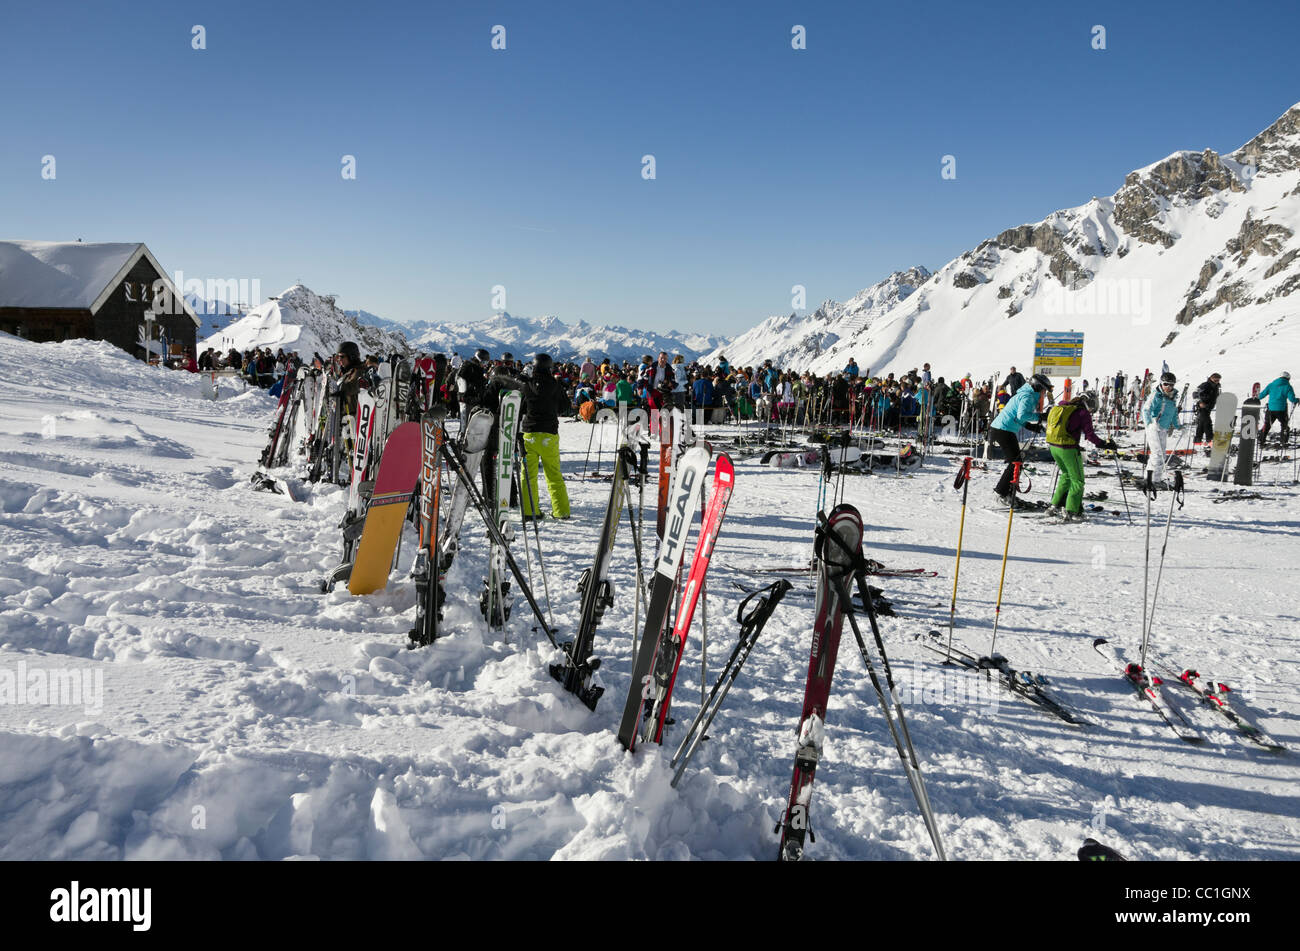 Les skis dans la neige à l'extérieur Ulmer Hutte restaurant ski occupé avec les skieurs en hiver dans les Alpes autrichiennes, St Anton am Arlberg Tyrol Autriche Banque D'Images